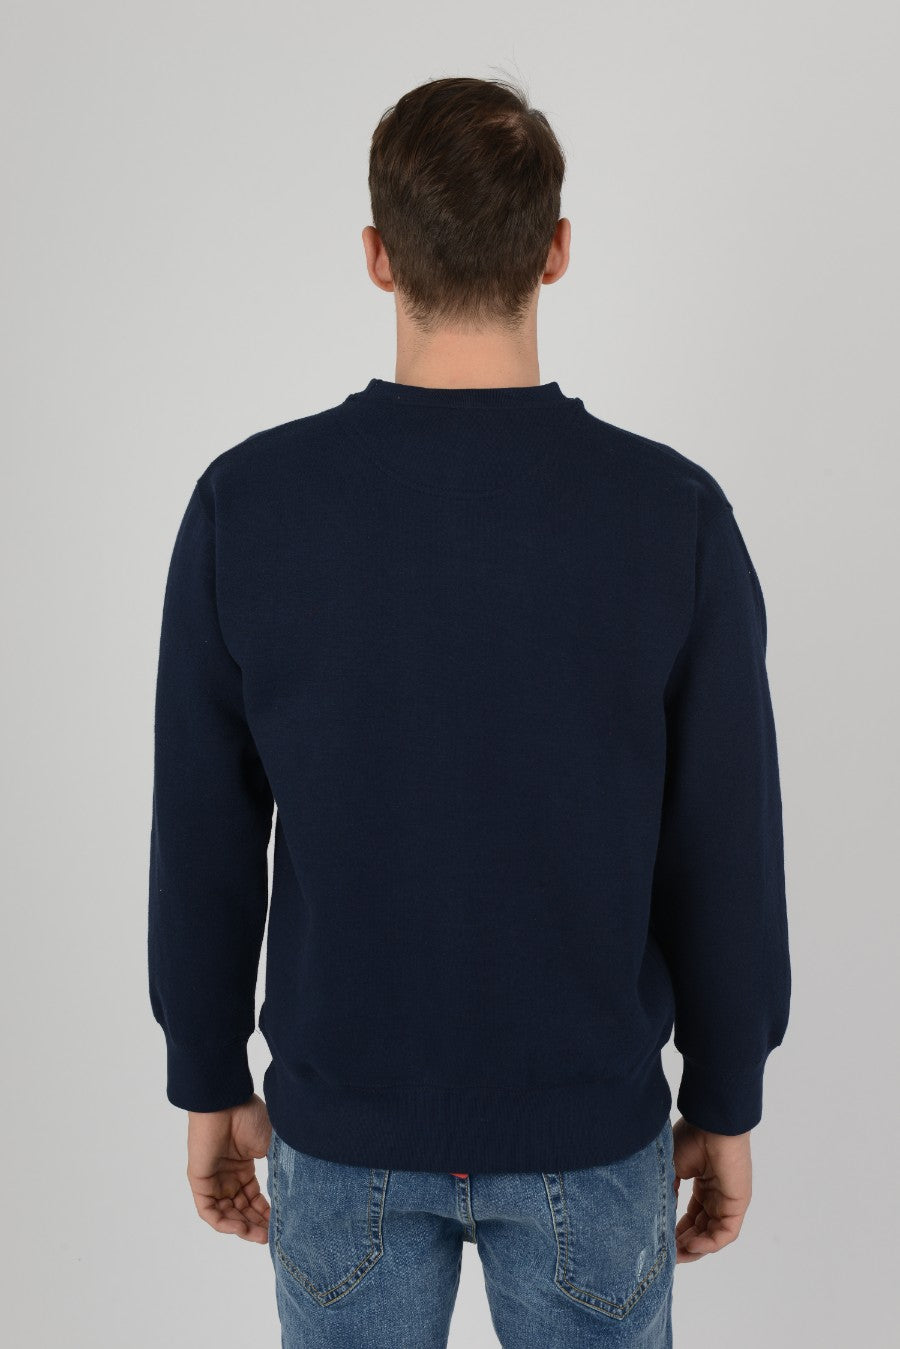 Mens-Plain-Fleece-Sweatshirt-Casual-Navy